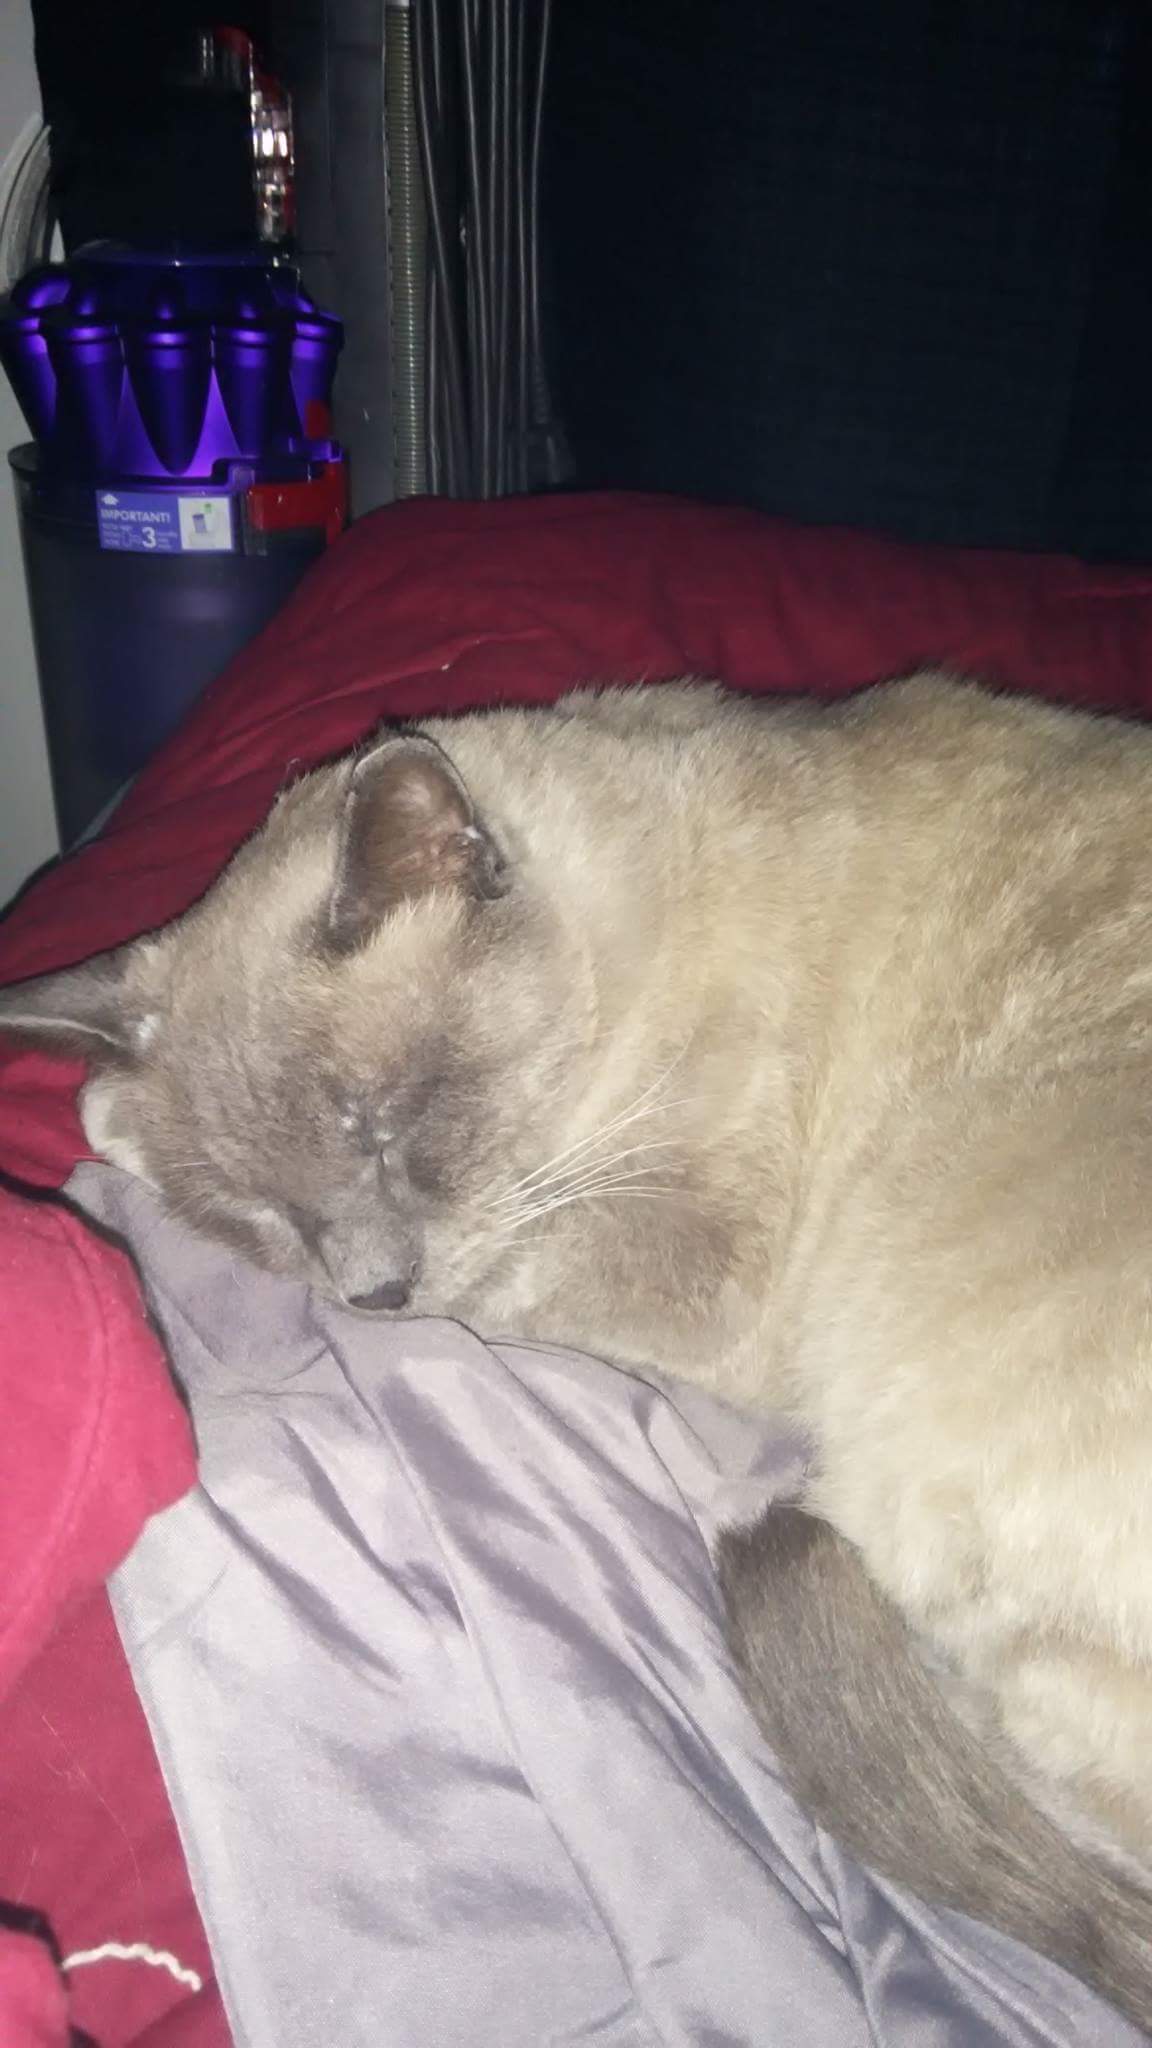 Image of Dexter, Lost Cat